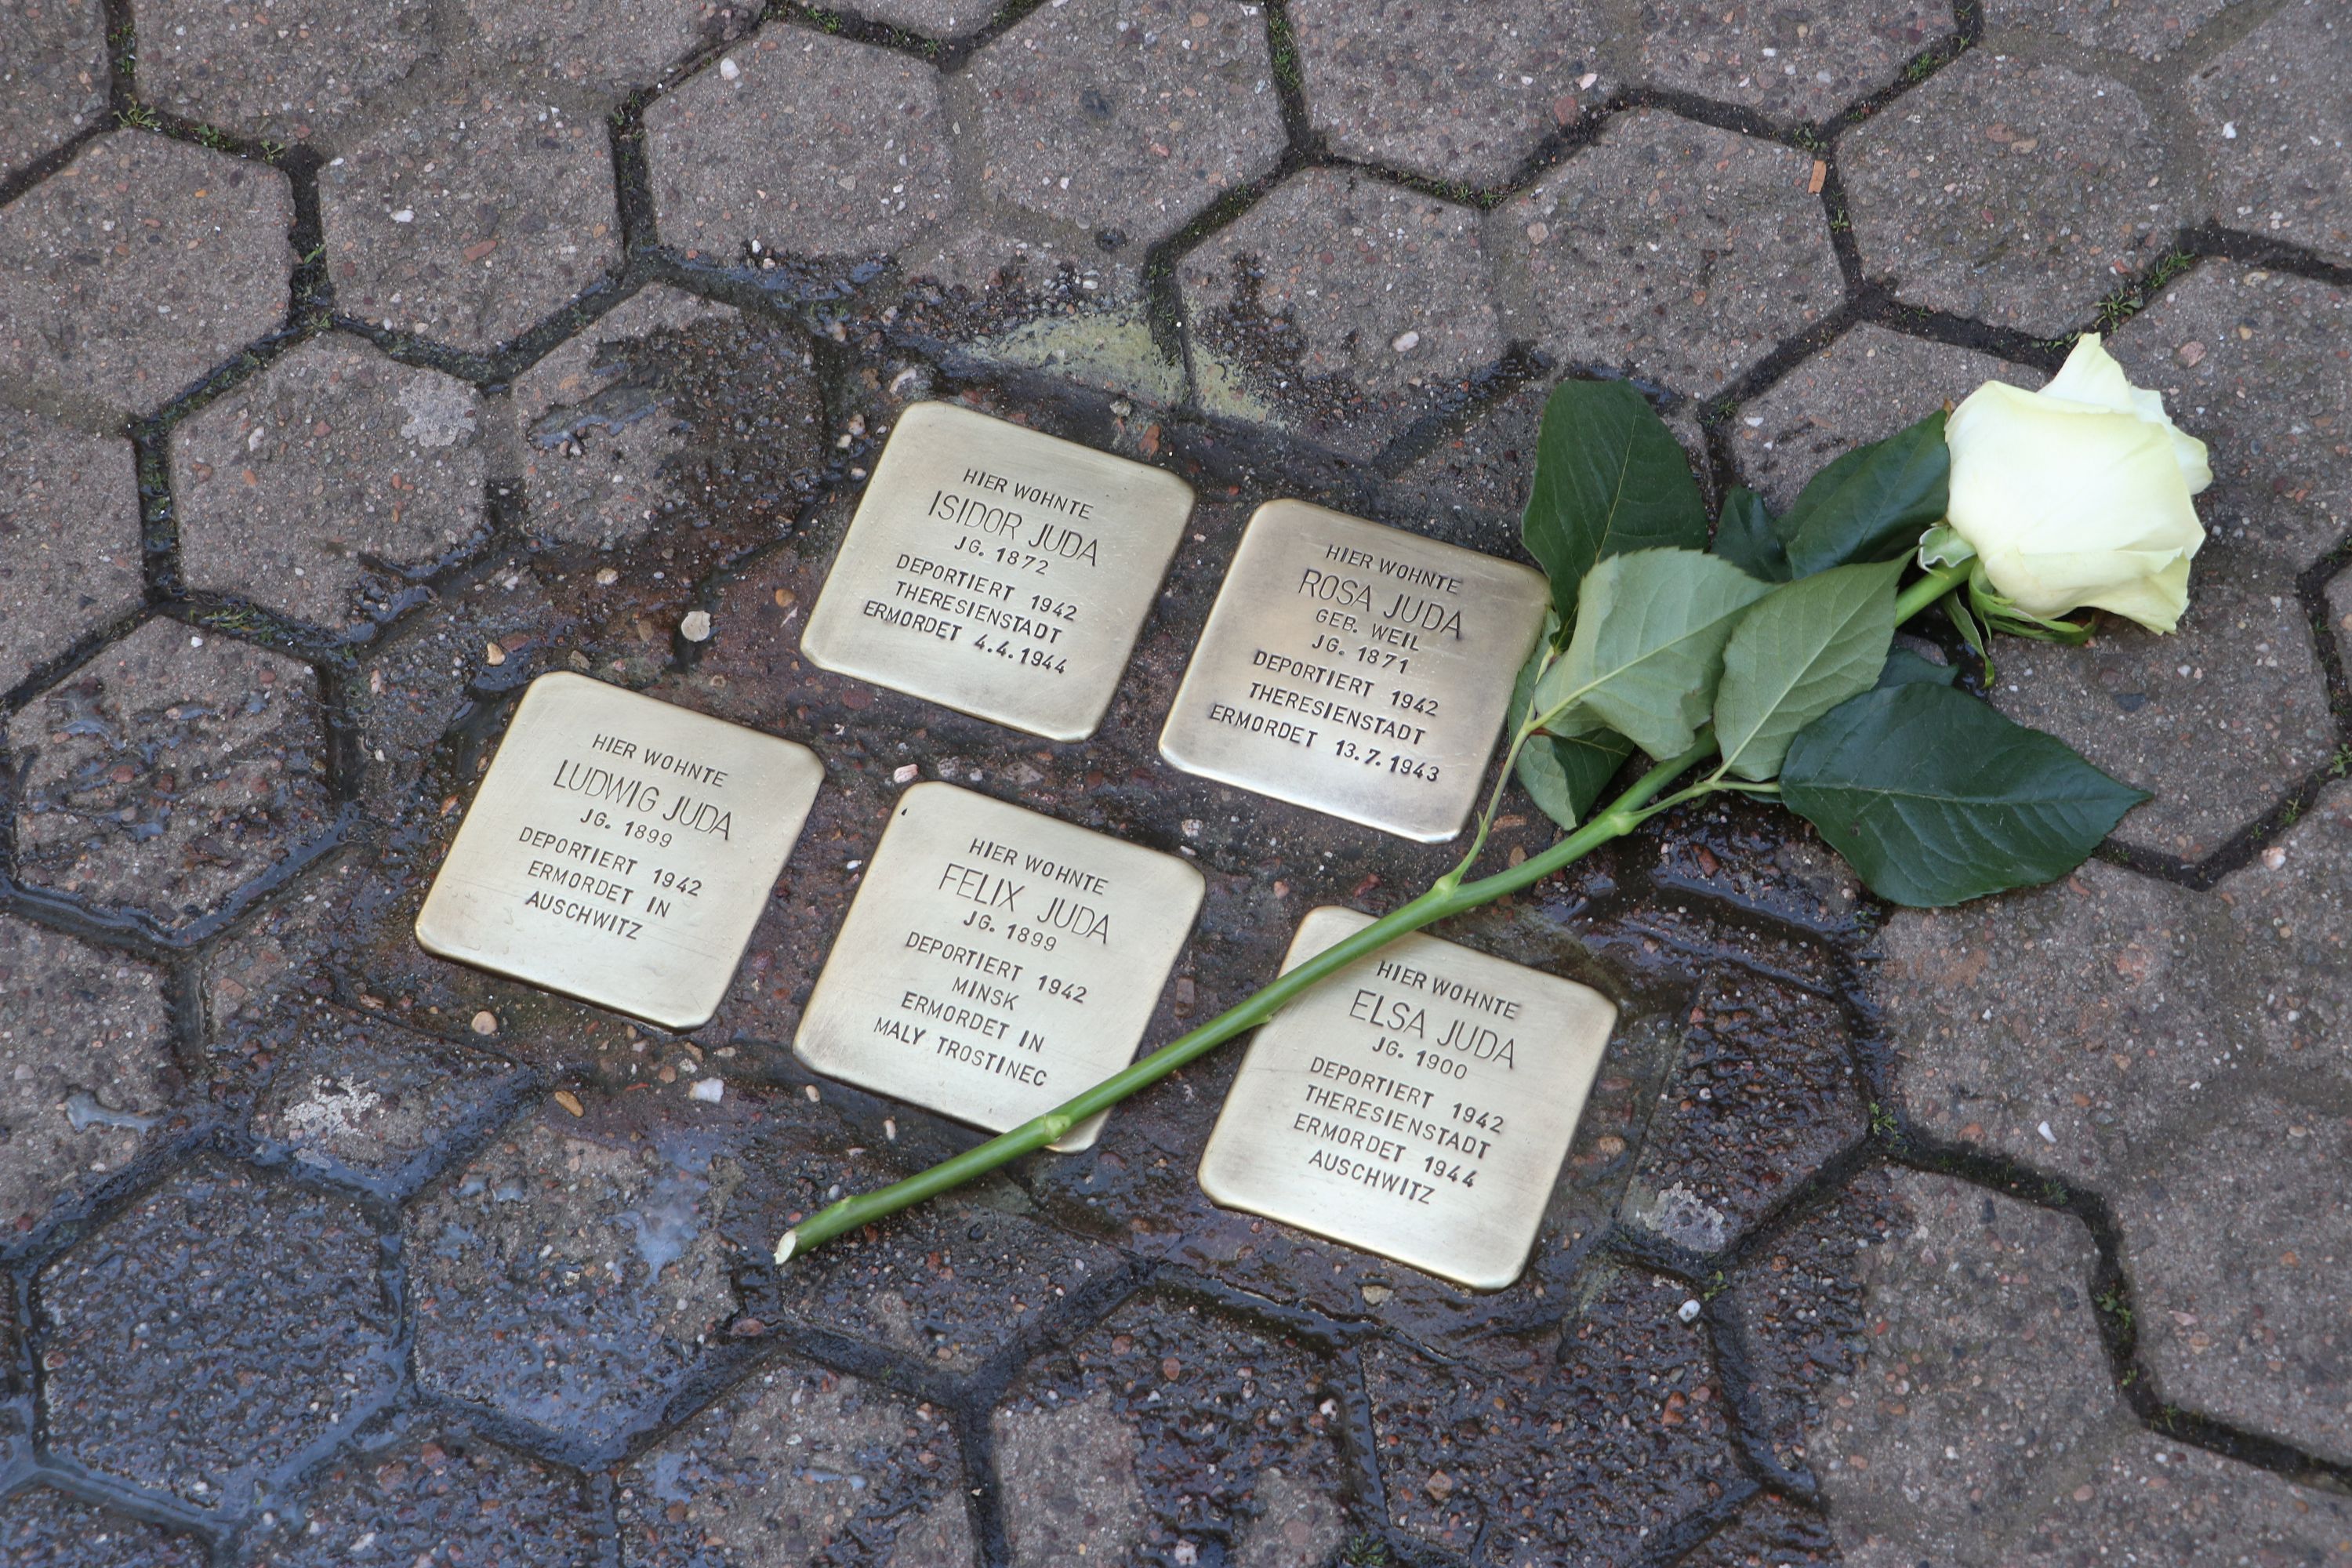 Als Zeichen der Anteilnahme legten die Anwesenden Rosen zu den Stolpersteinen. (Foto: Sophia Bonnaire)